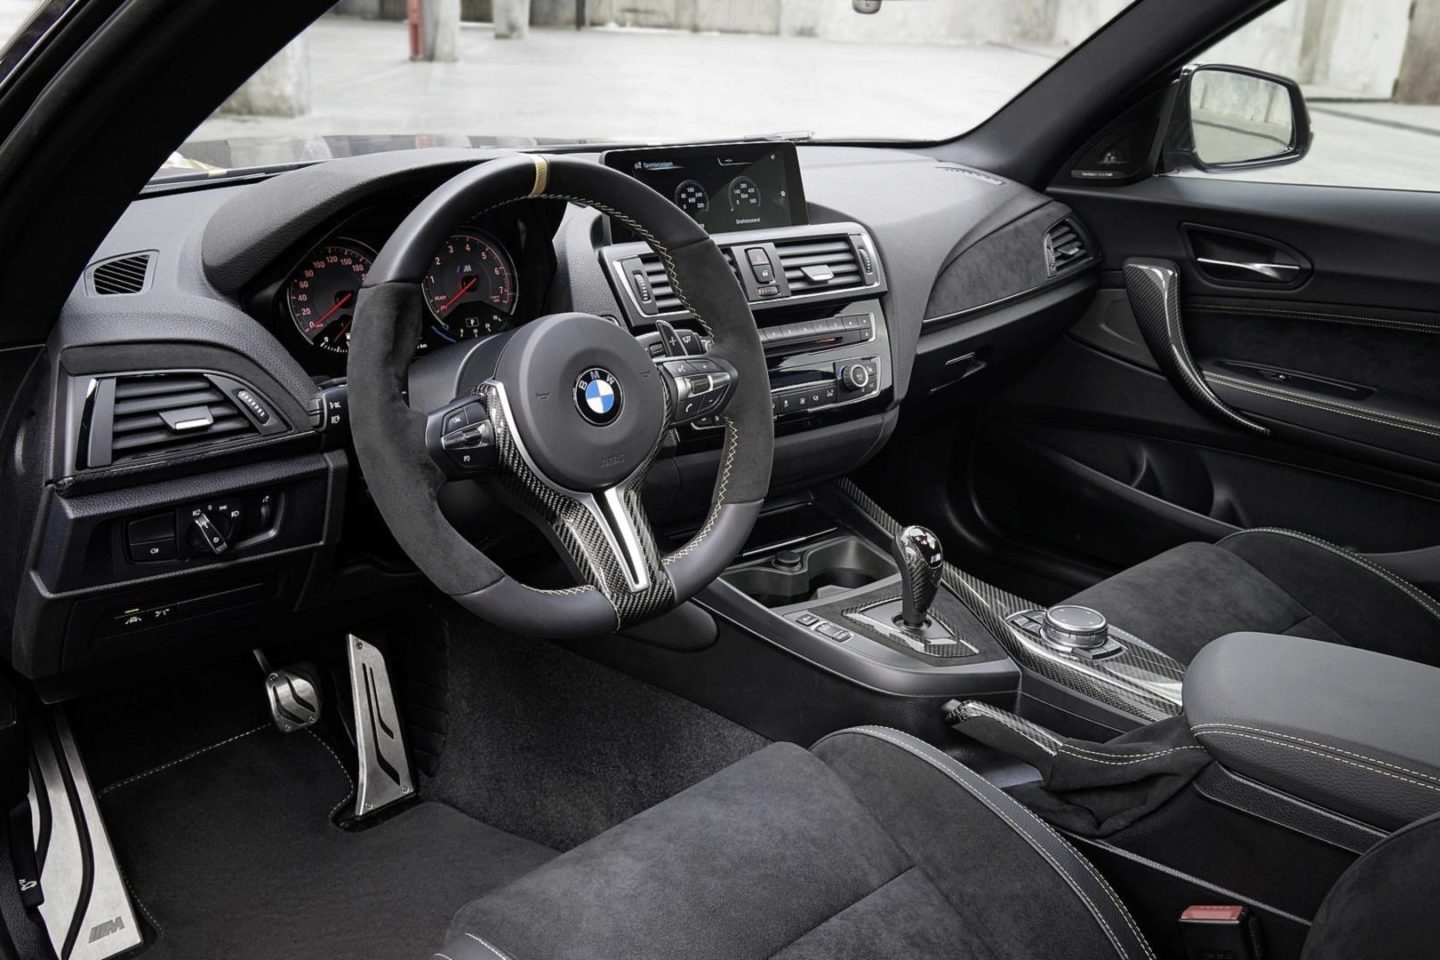 BMW M Performance Parts Concept, BMW M2